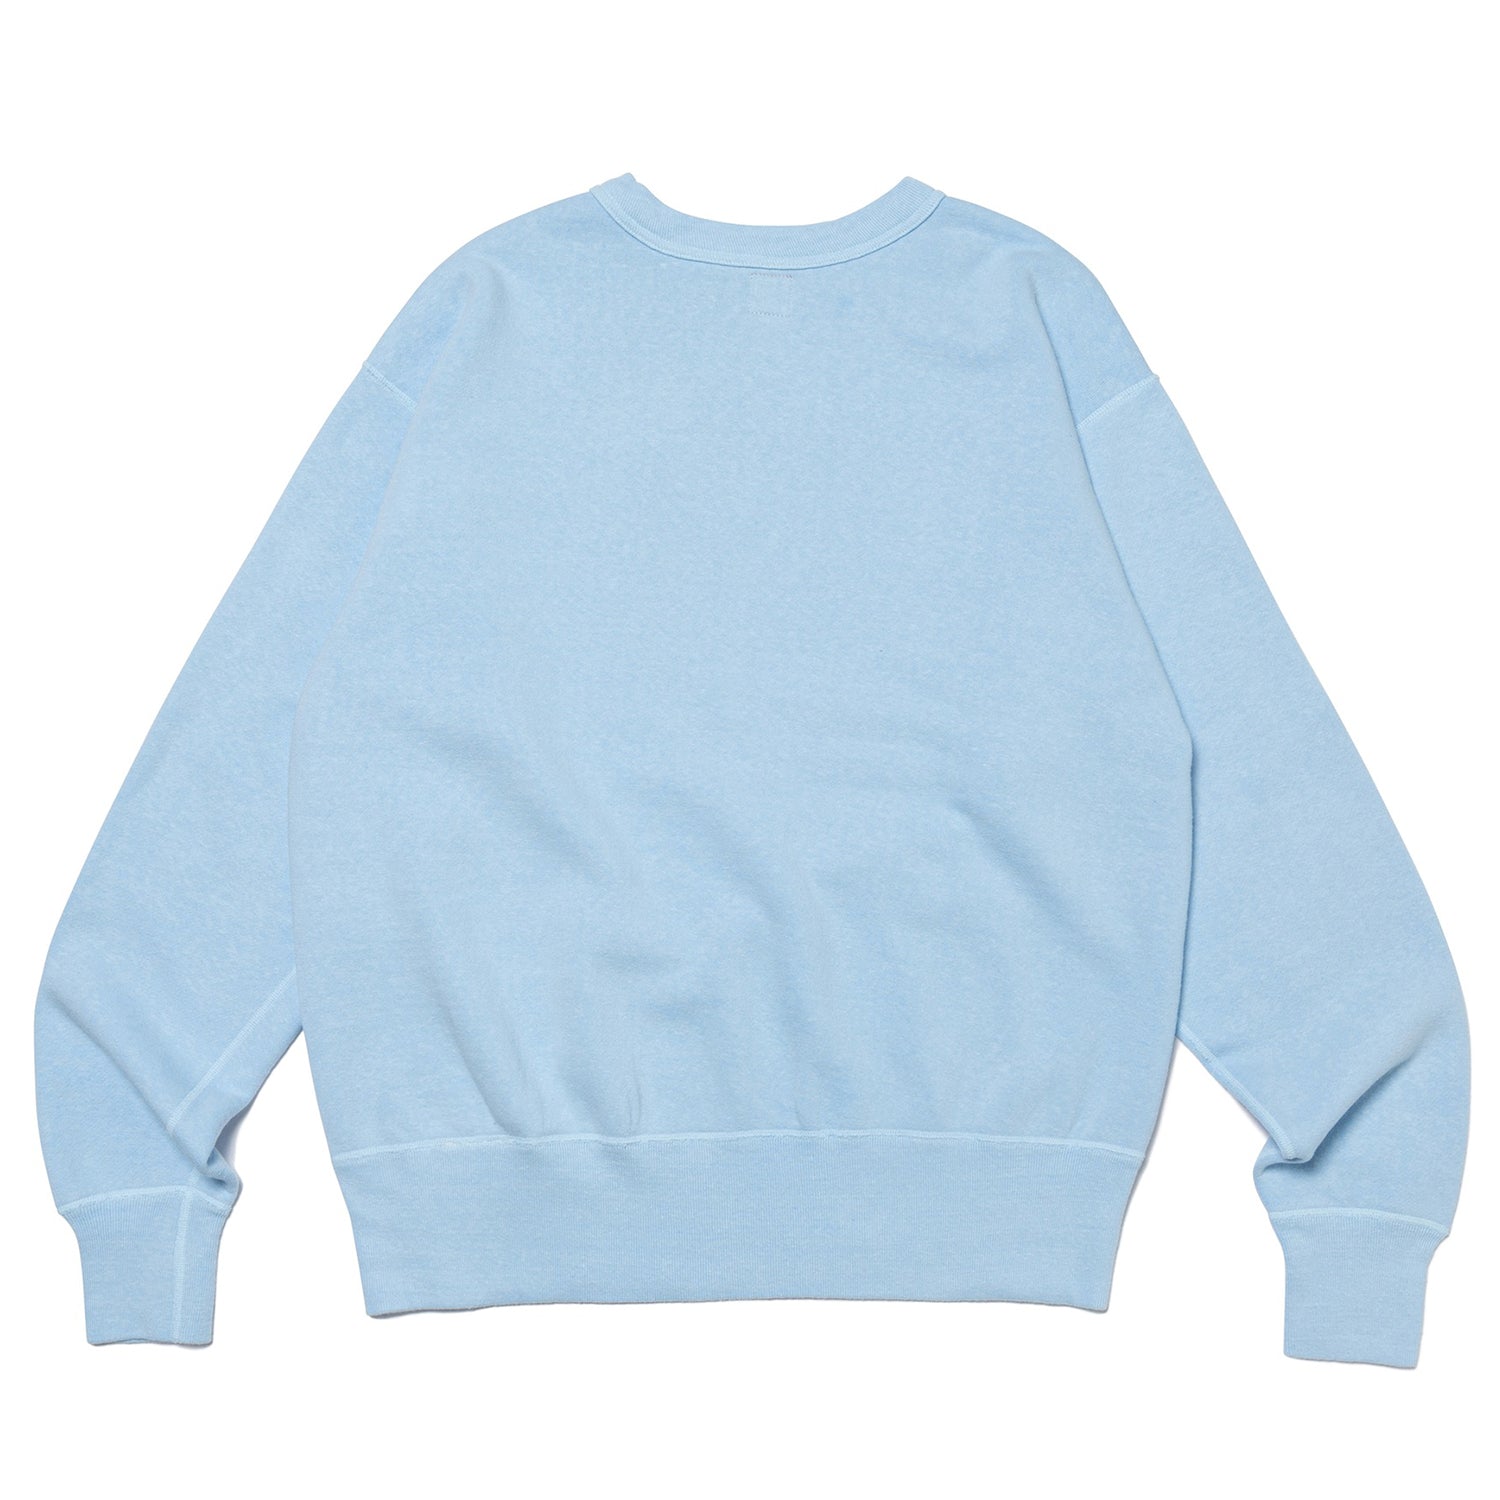 Tsuriami Sweatshirt #1 - INVINCIBLE